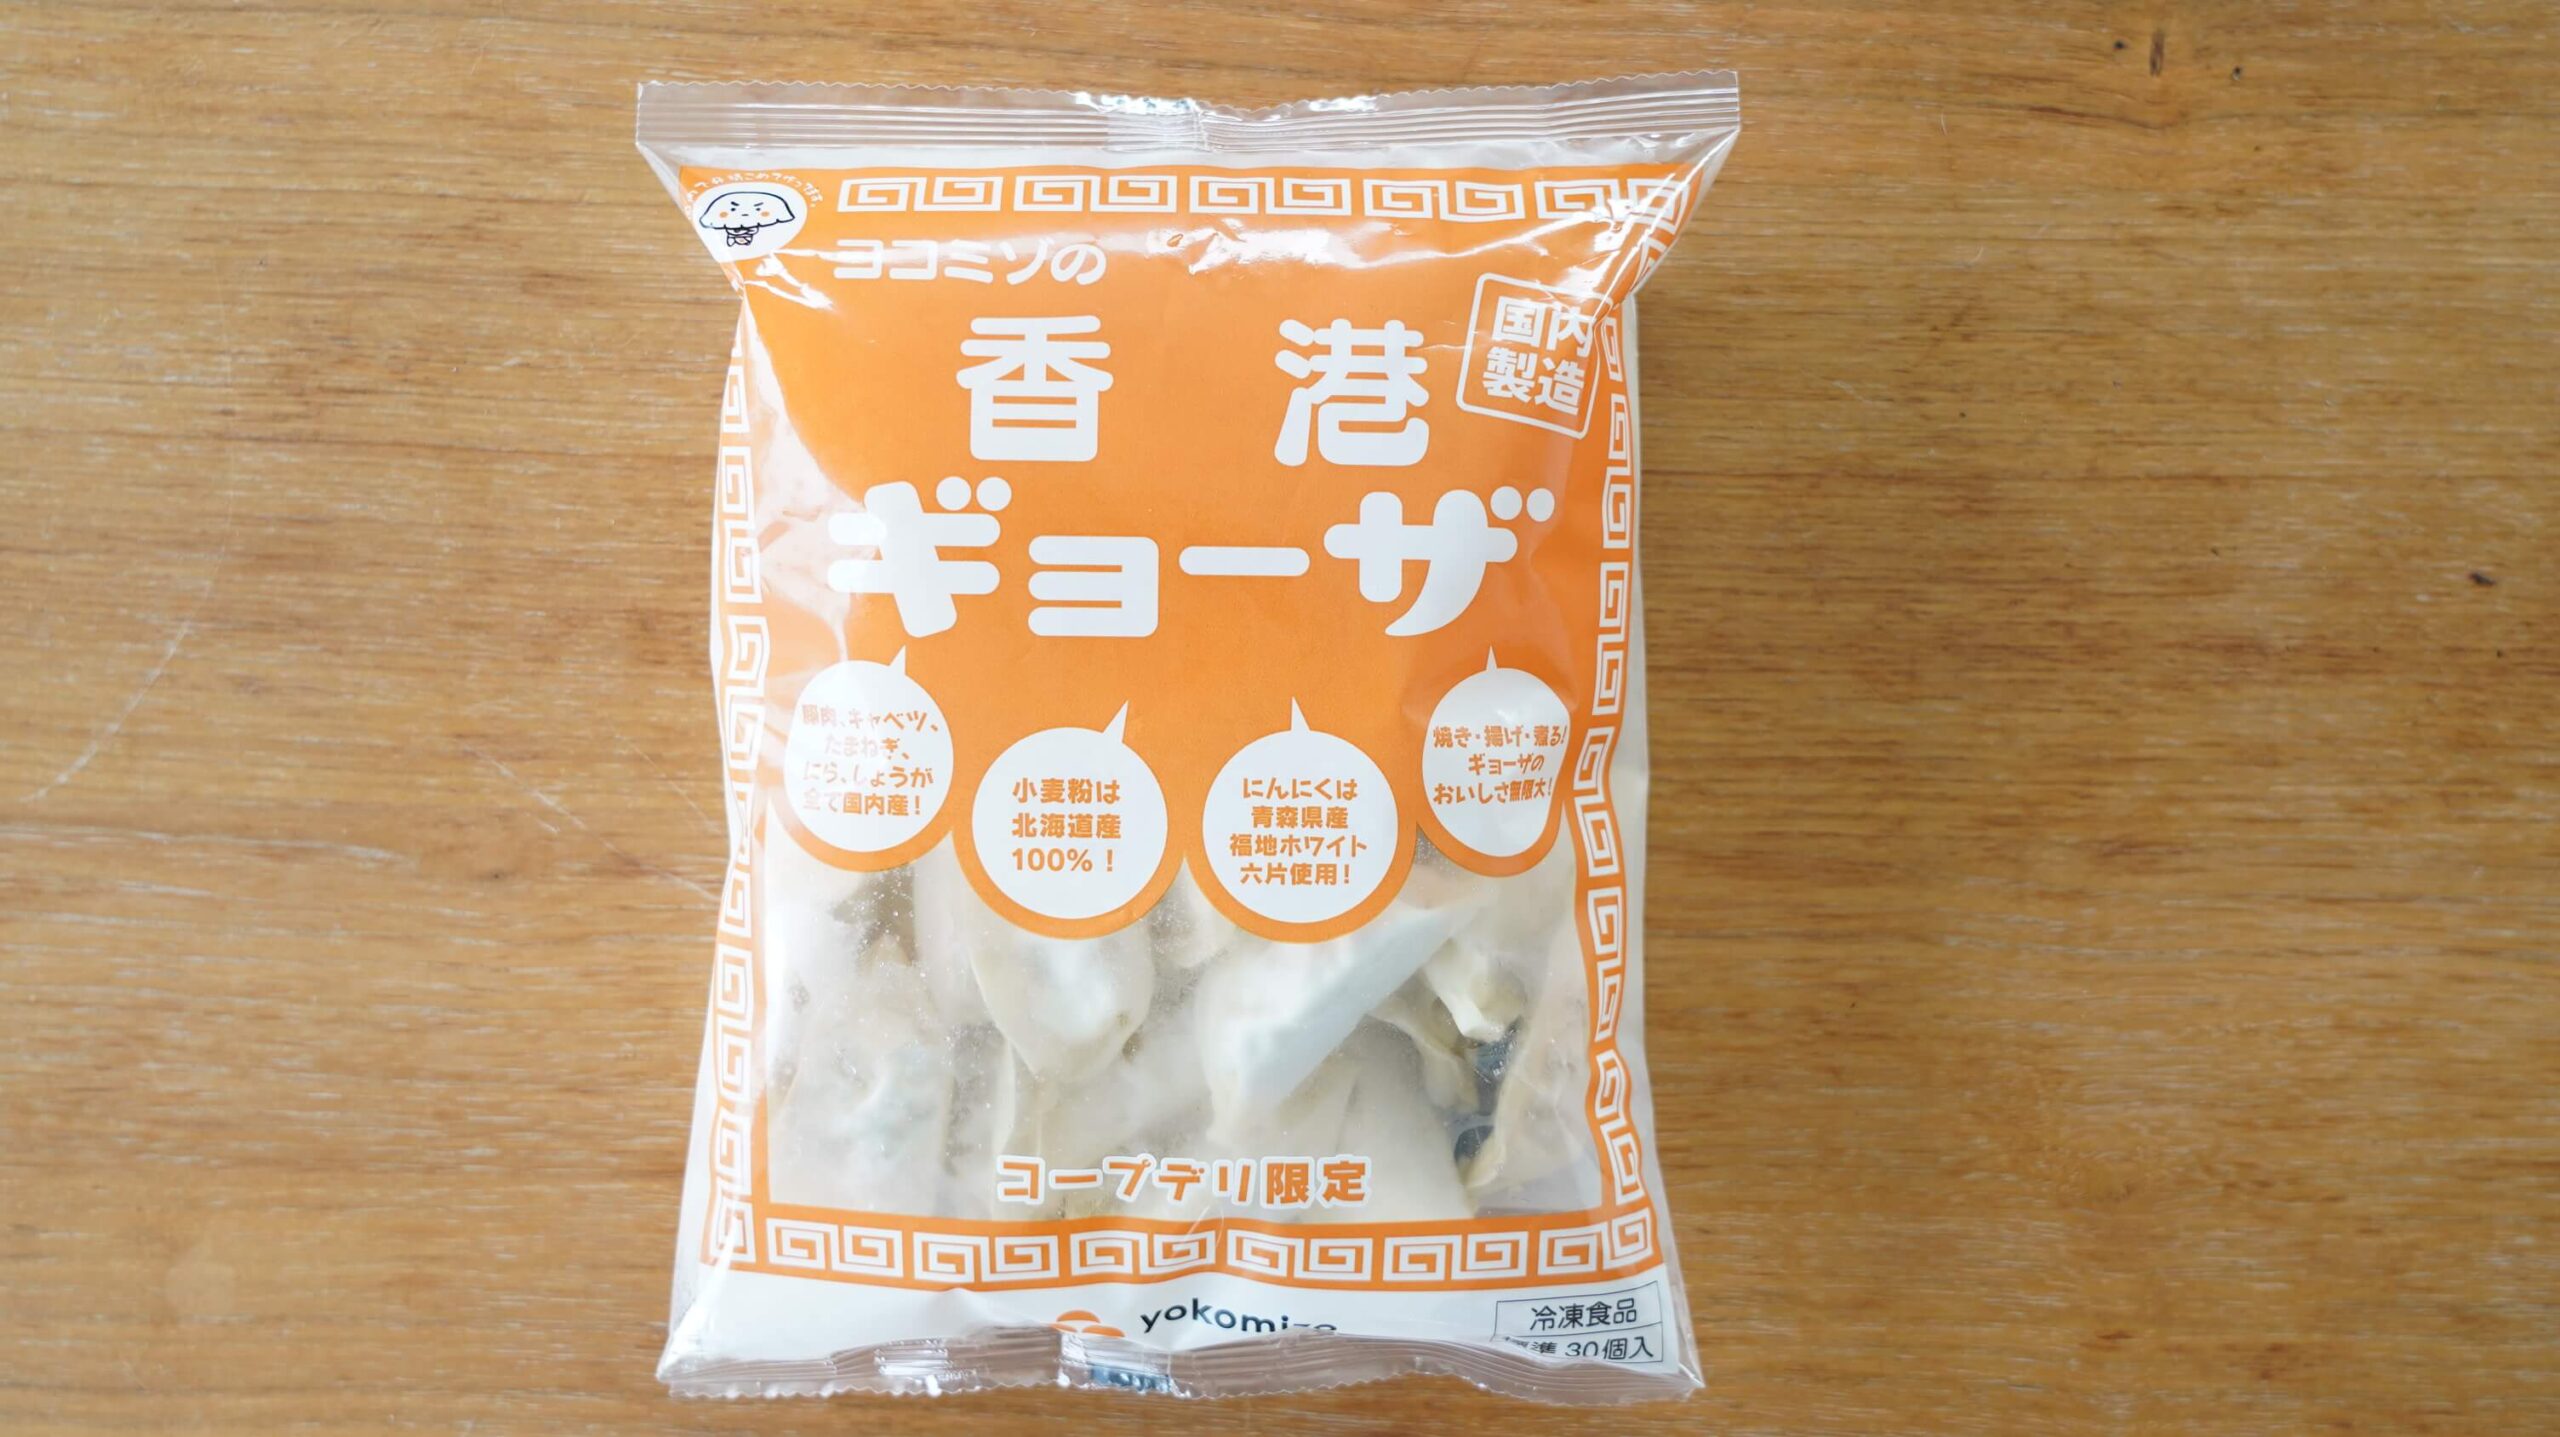 生協coop宅配の冷凍食品「ヨコミゾ・香港ギョーザ」のパッケージ写真